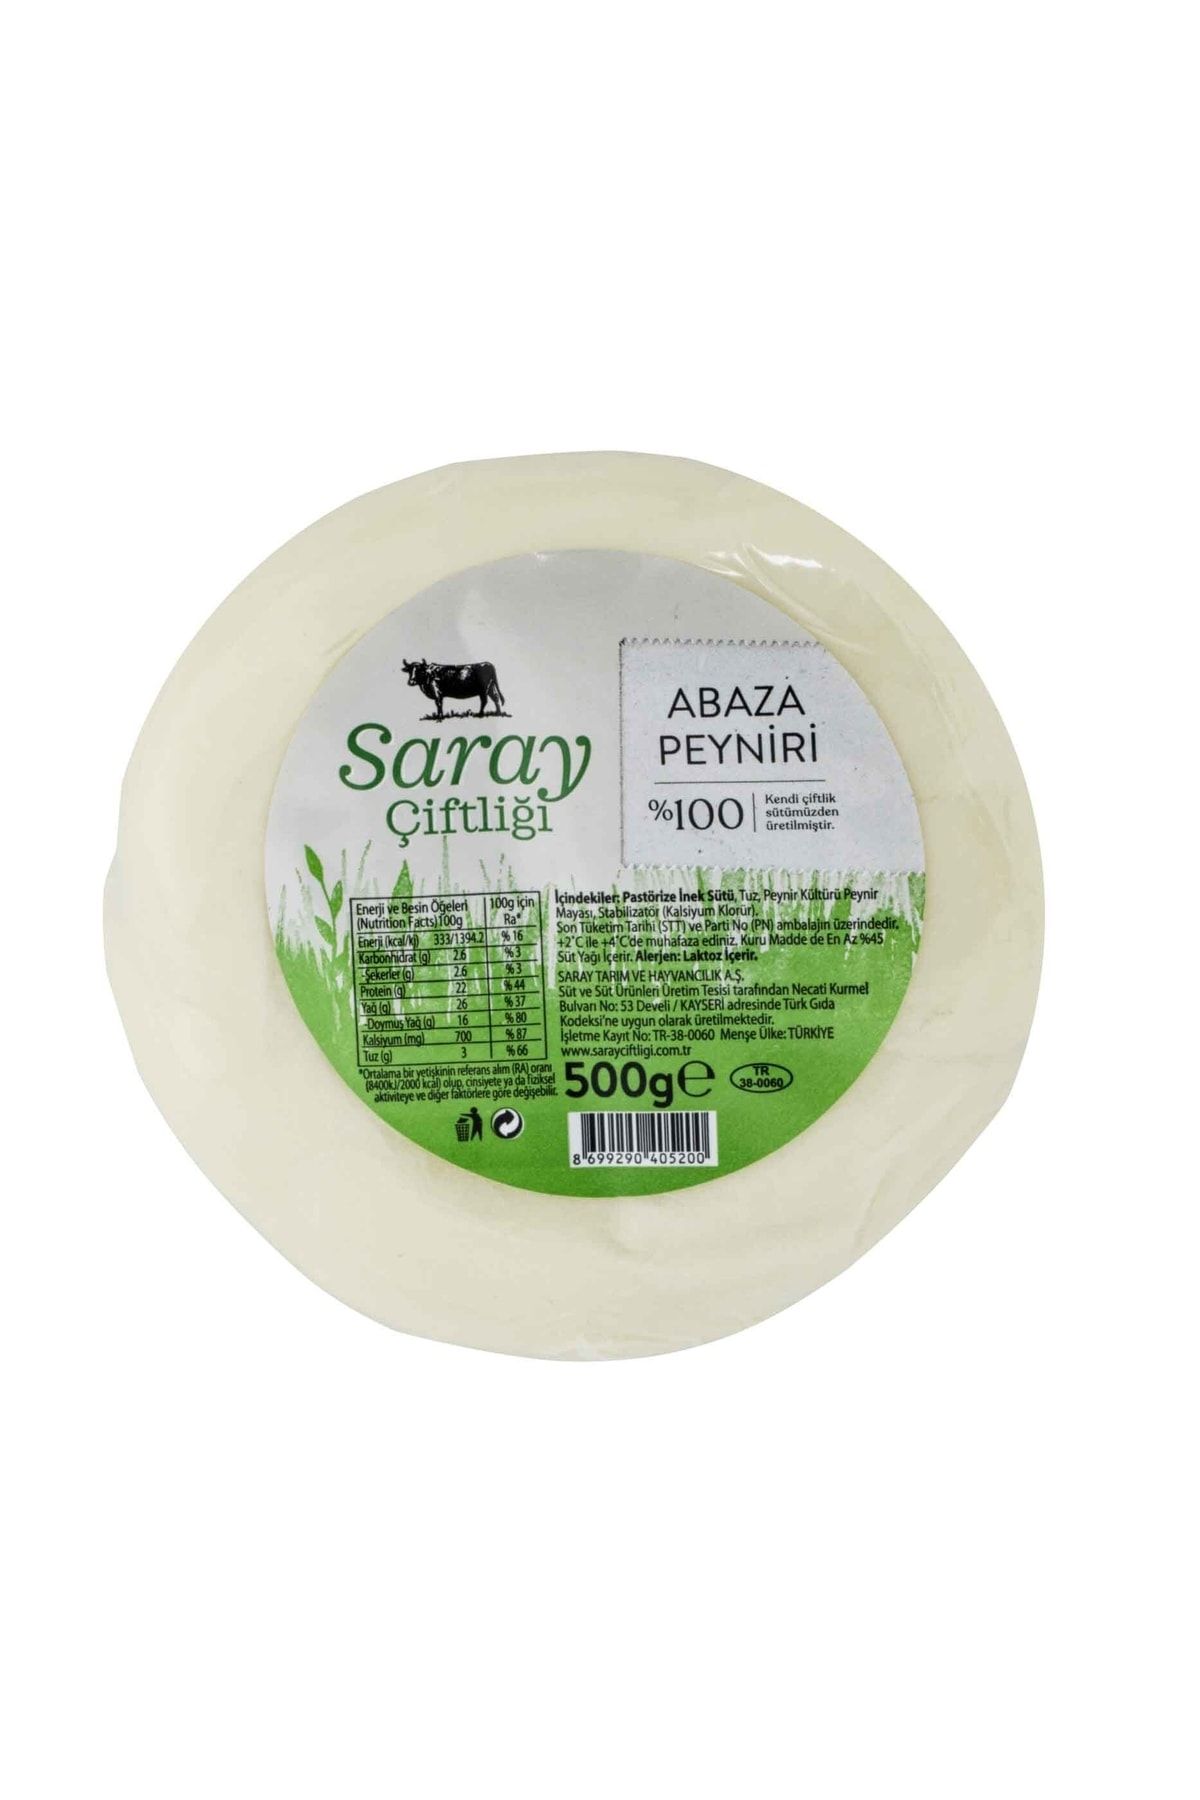 Saray Çiftliği Abaza Peyniri 500gr ( %100 Kendi Çiftlik Sütümüzden Üretilmiştir. )